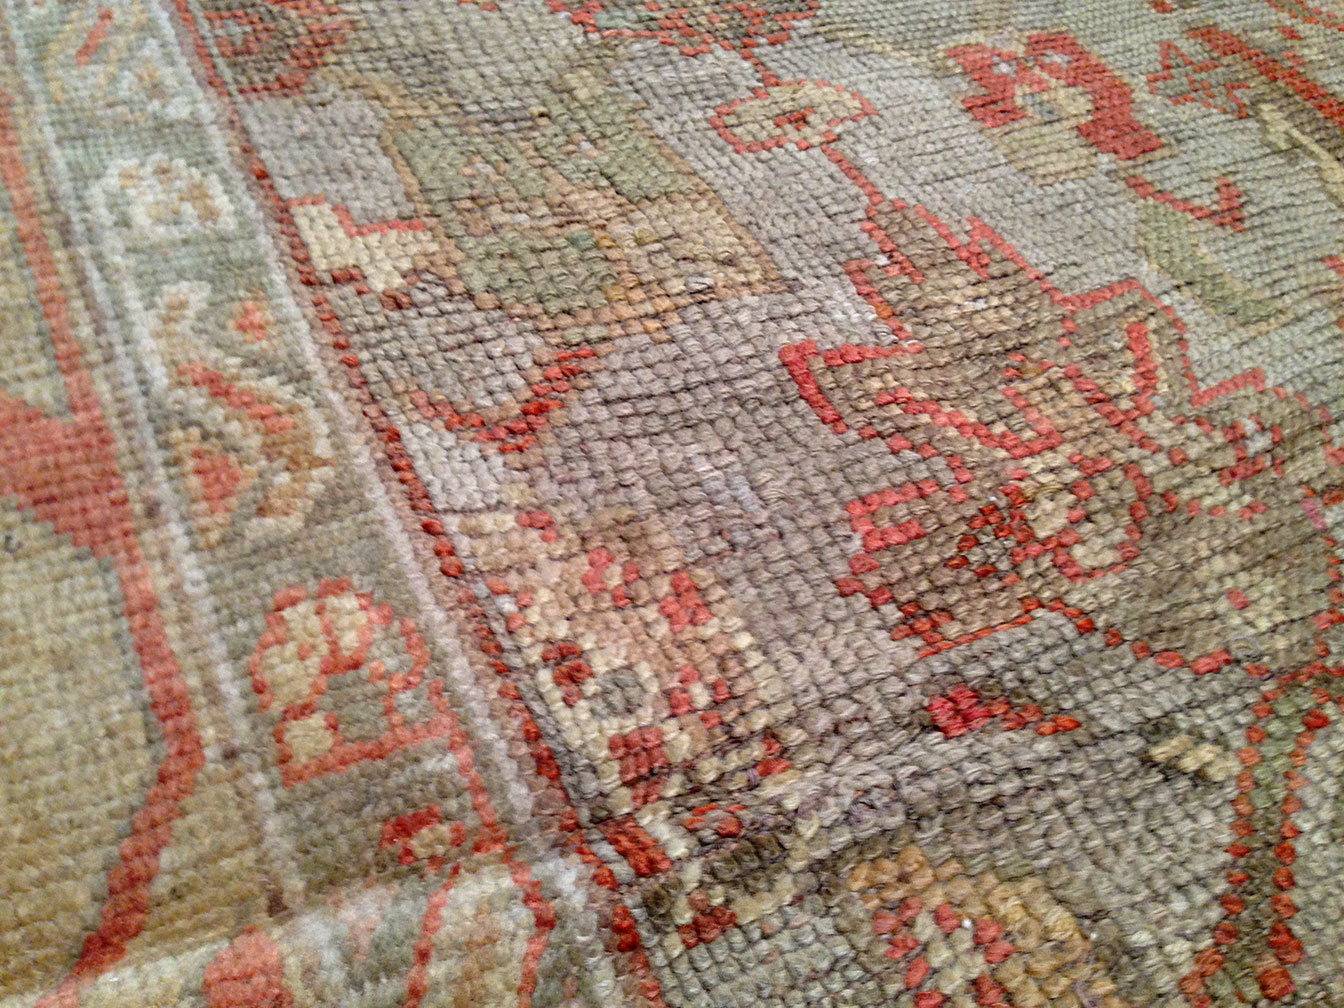 Antique oushak Carpet - # 11262